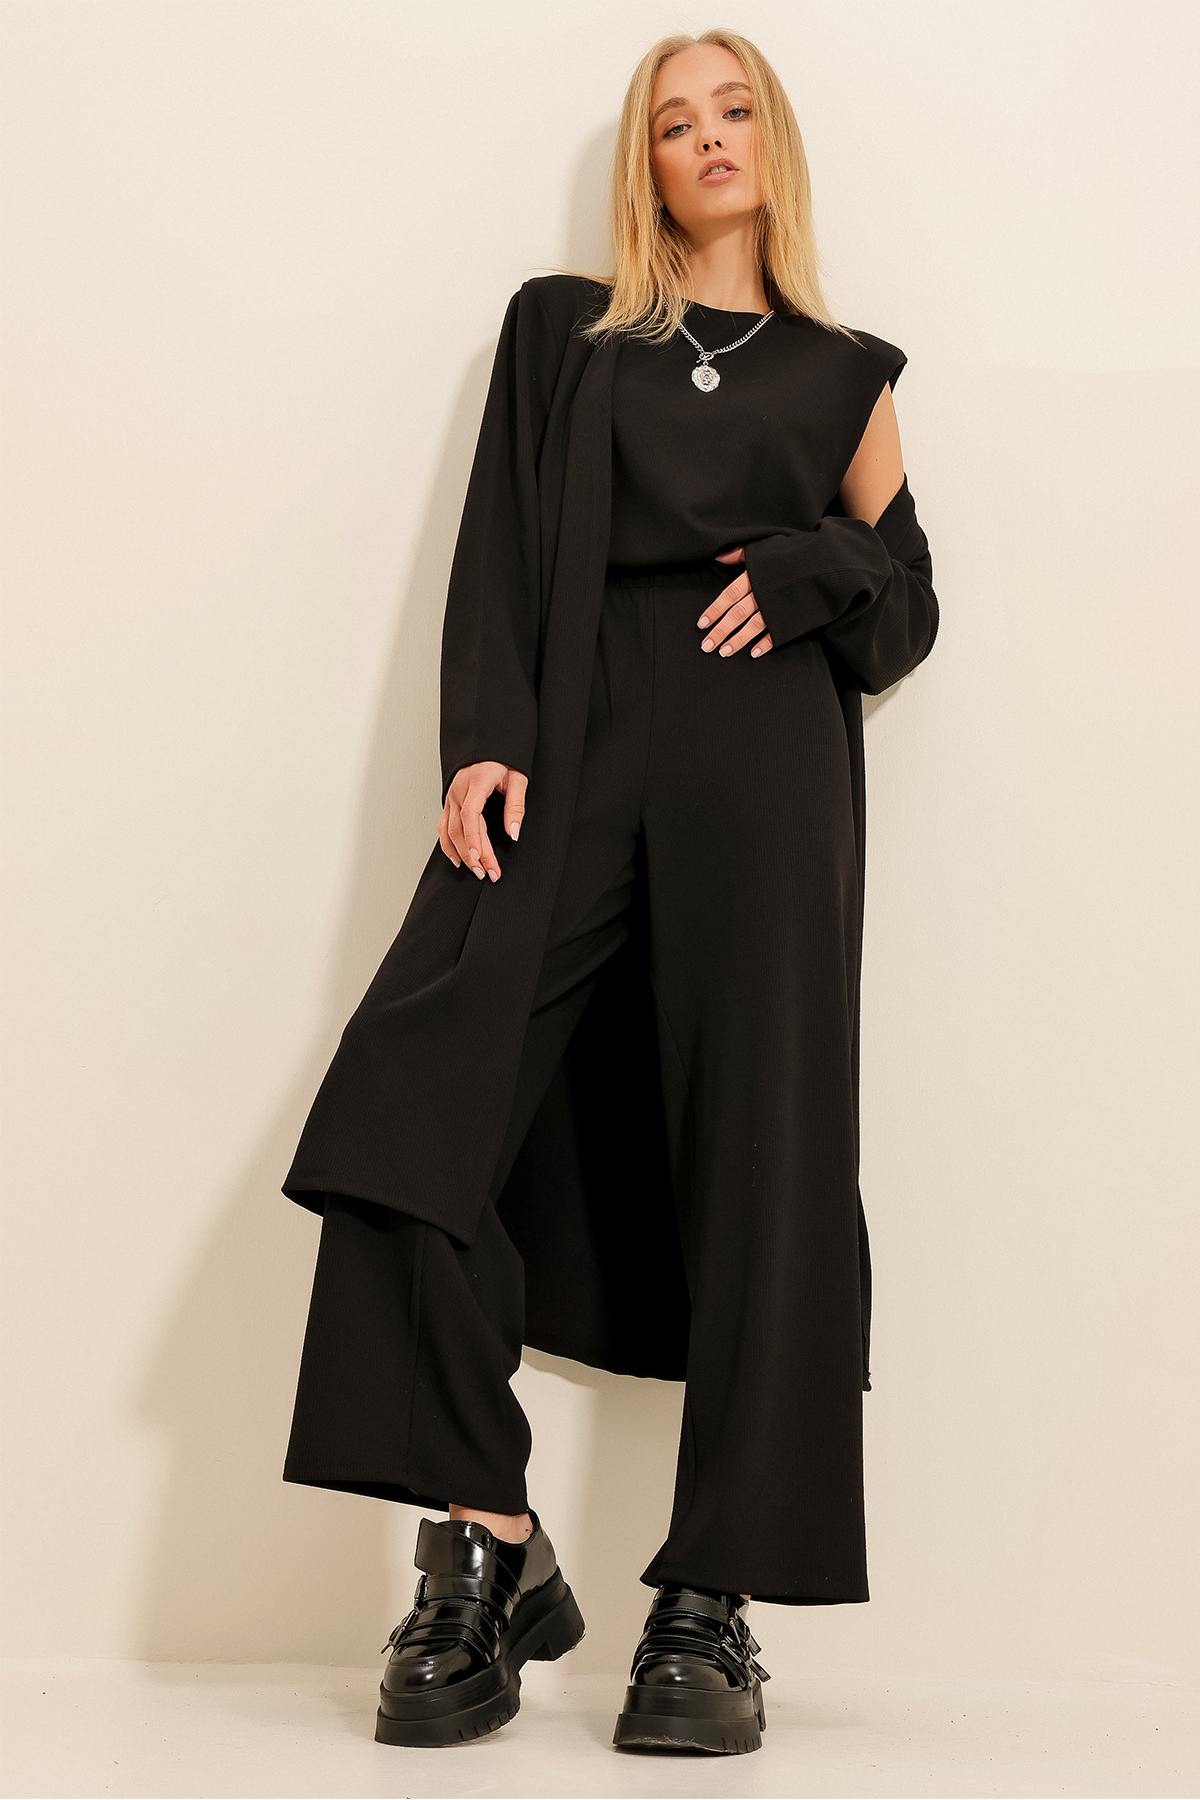 Trend Alaçatı Stili Dámska čierna polstrovaná blúzka s polstrovaným výstrihom posádky s nohavicami a kardigánovým oblekom